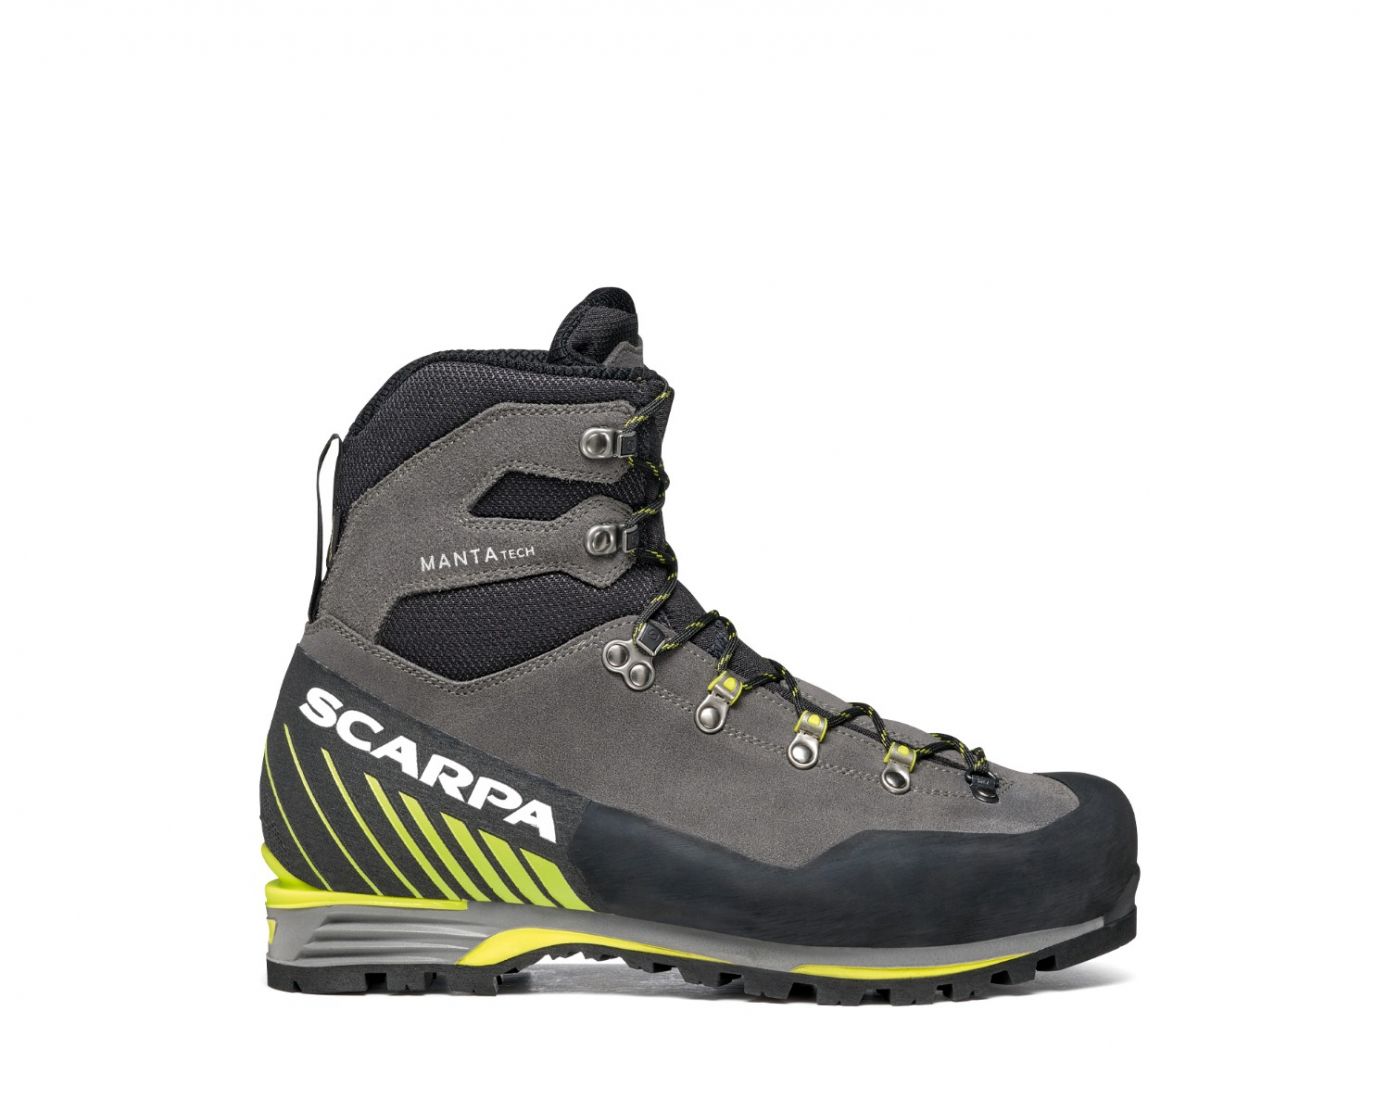 Field Tested: Scarpa Manta GTX Tech mountain boot - Climbing